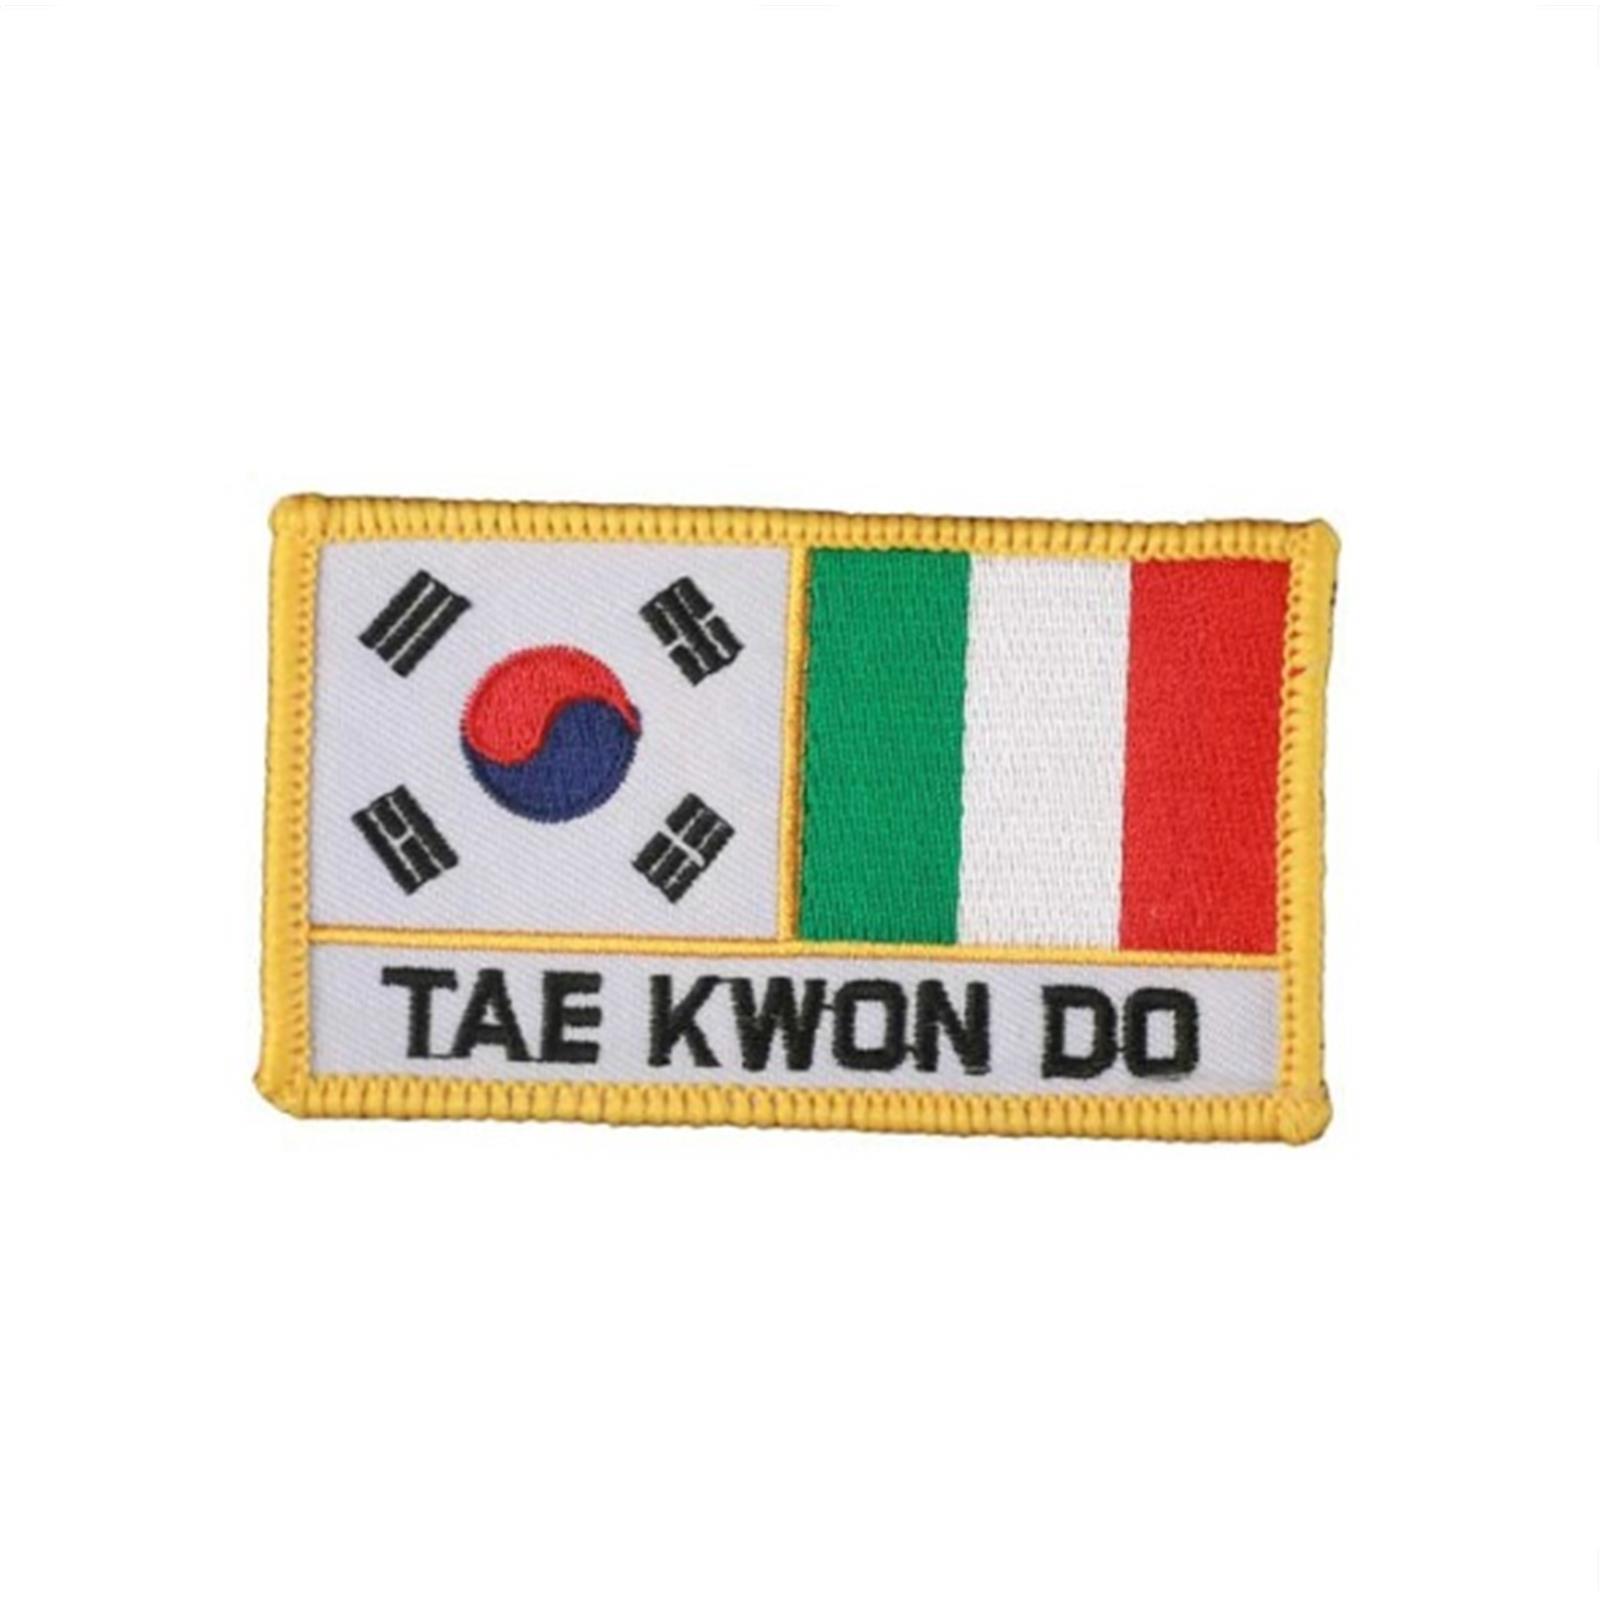 Dae Do TOPPA KOREA - ITALIA TAEKWONDO